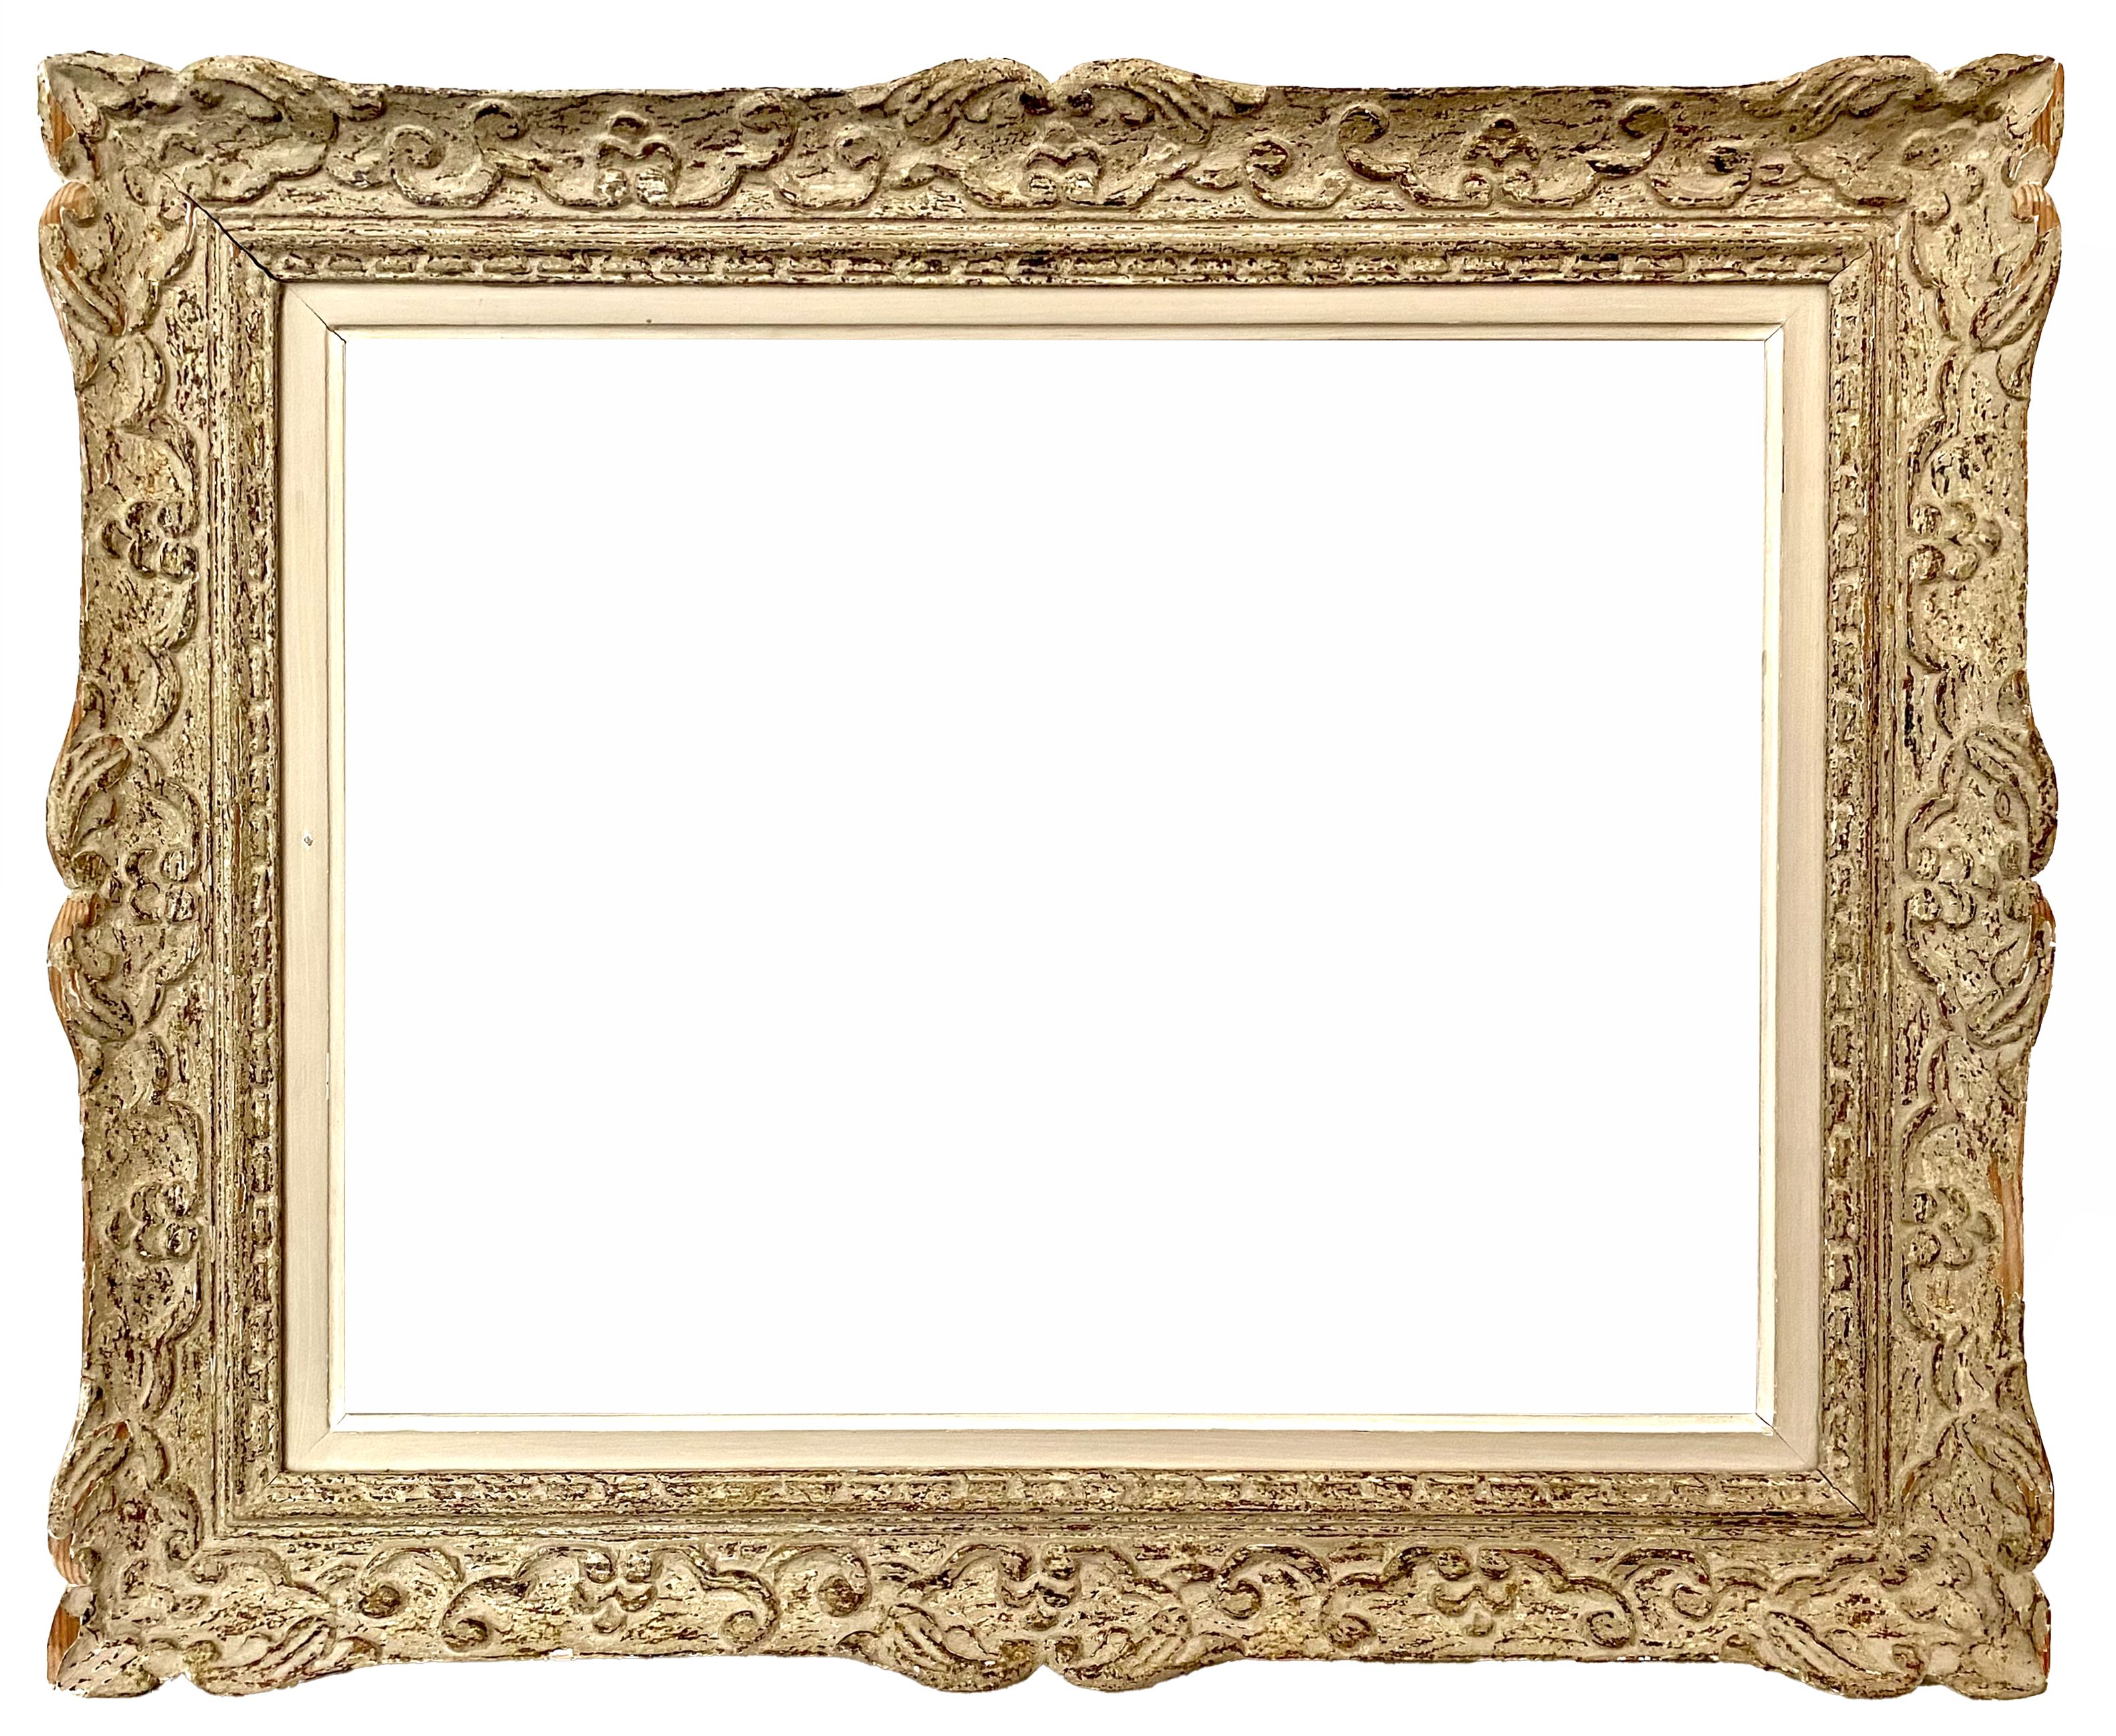 Montparnasse frame - 61.10 X 46.40 - Ref - 1671